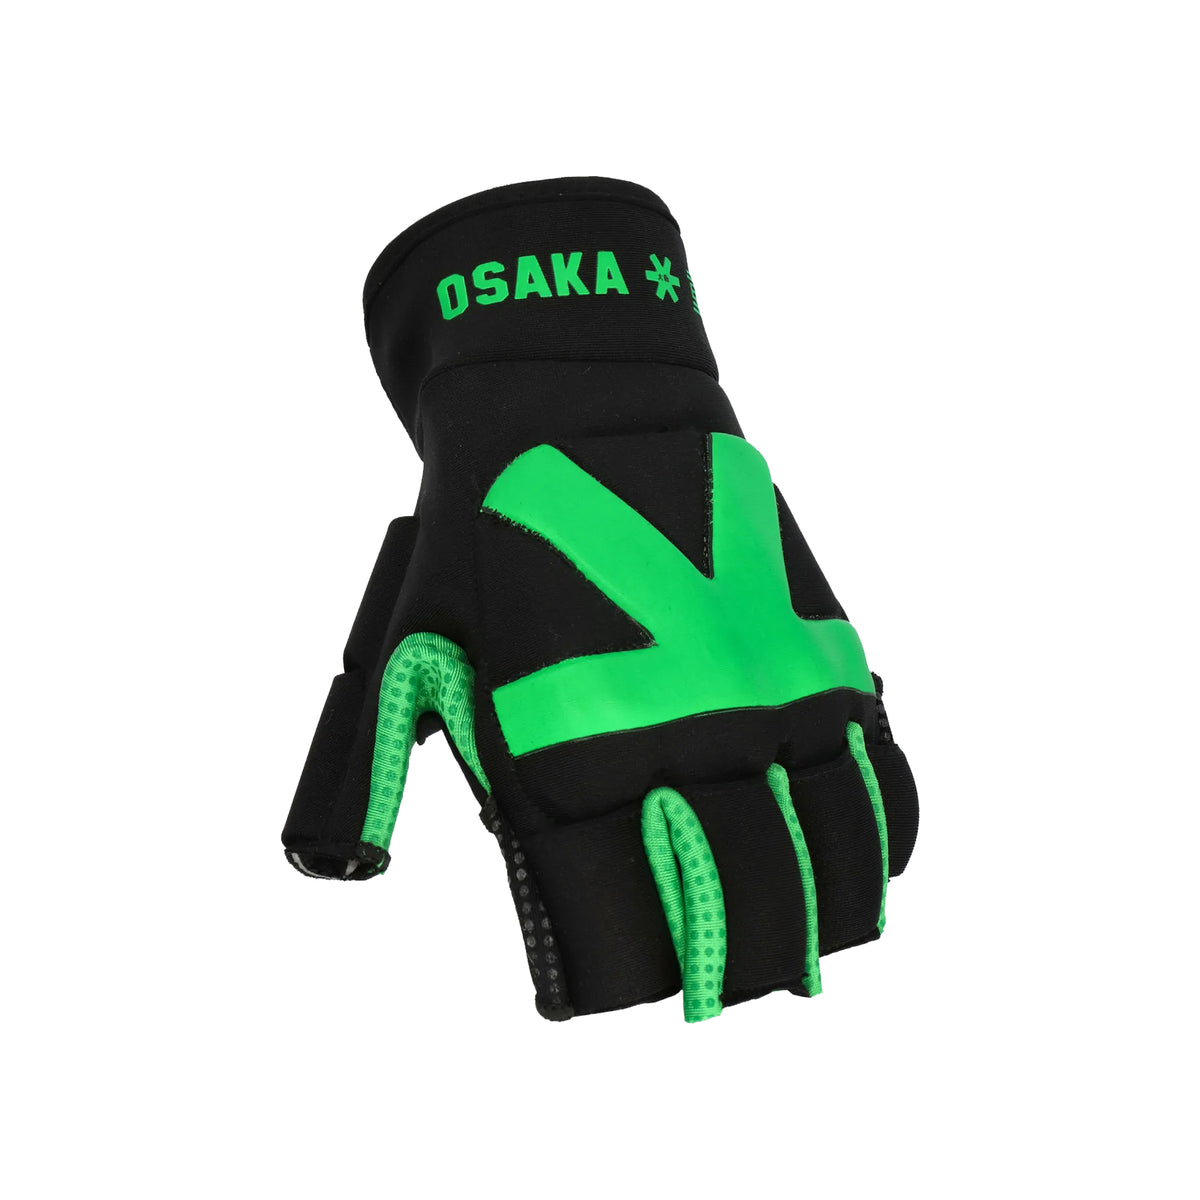 Osaka Armadillo 4.0 Hockey Glove: Black